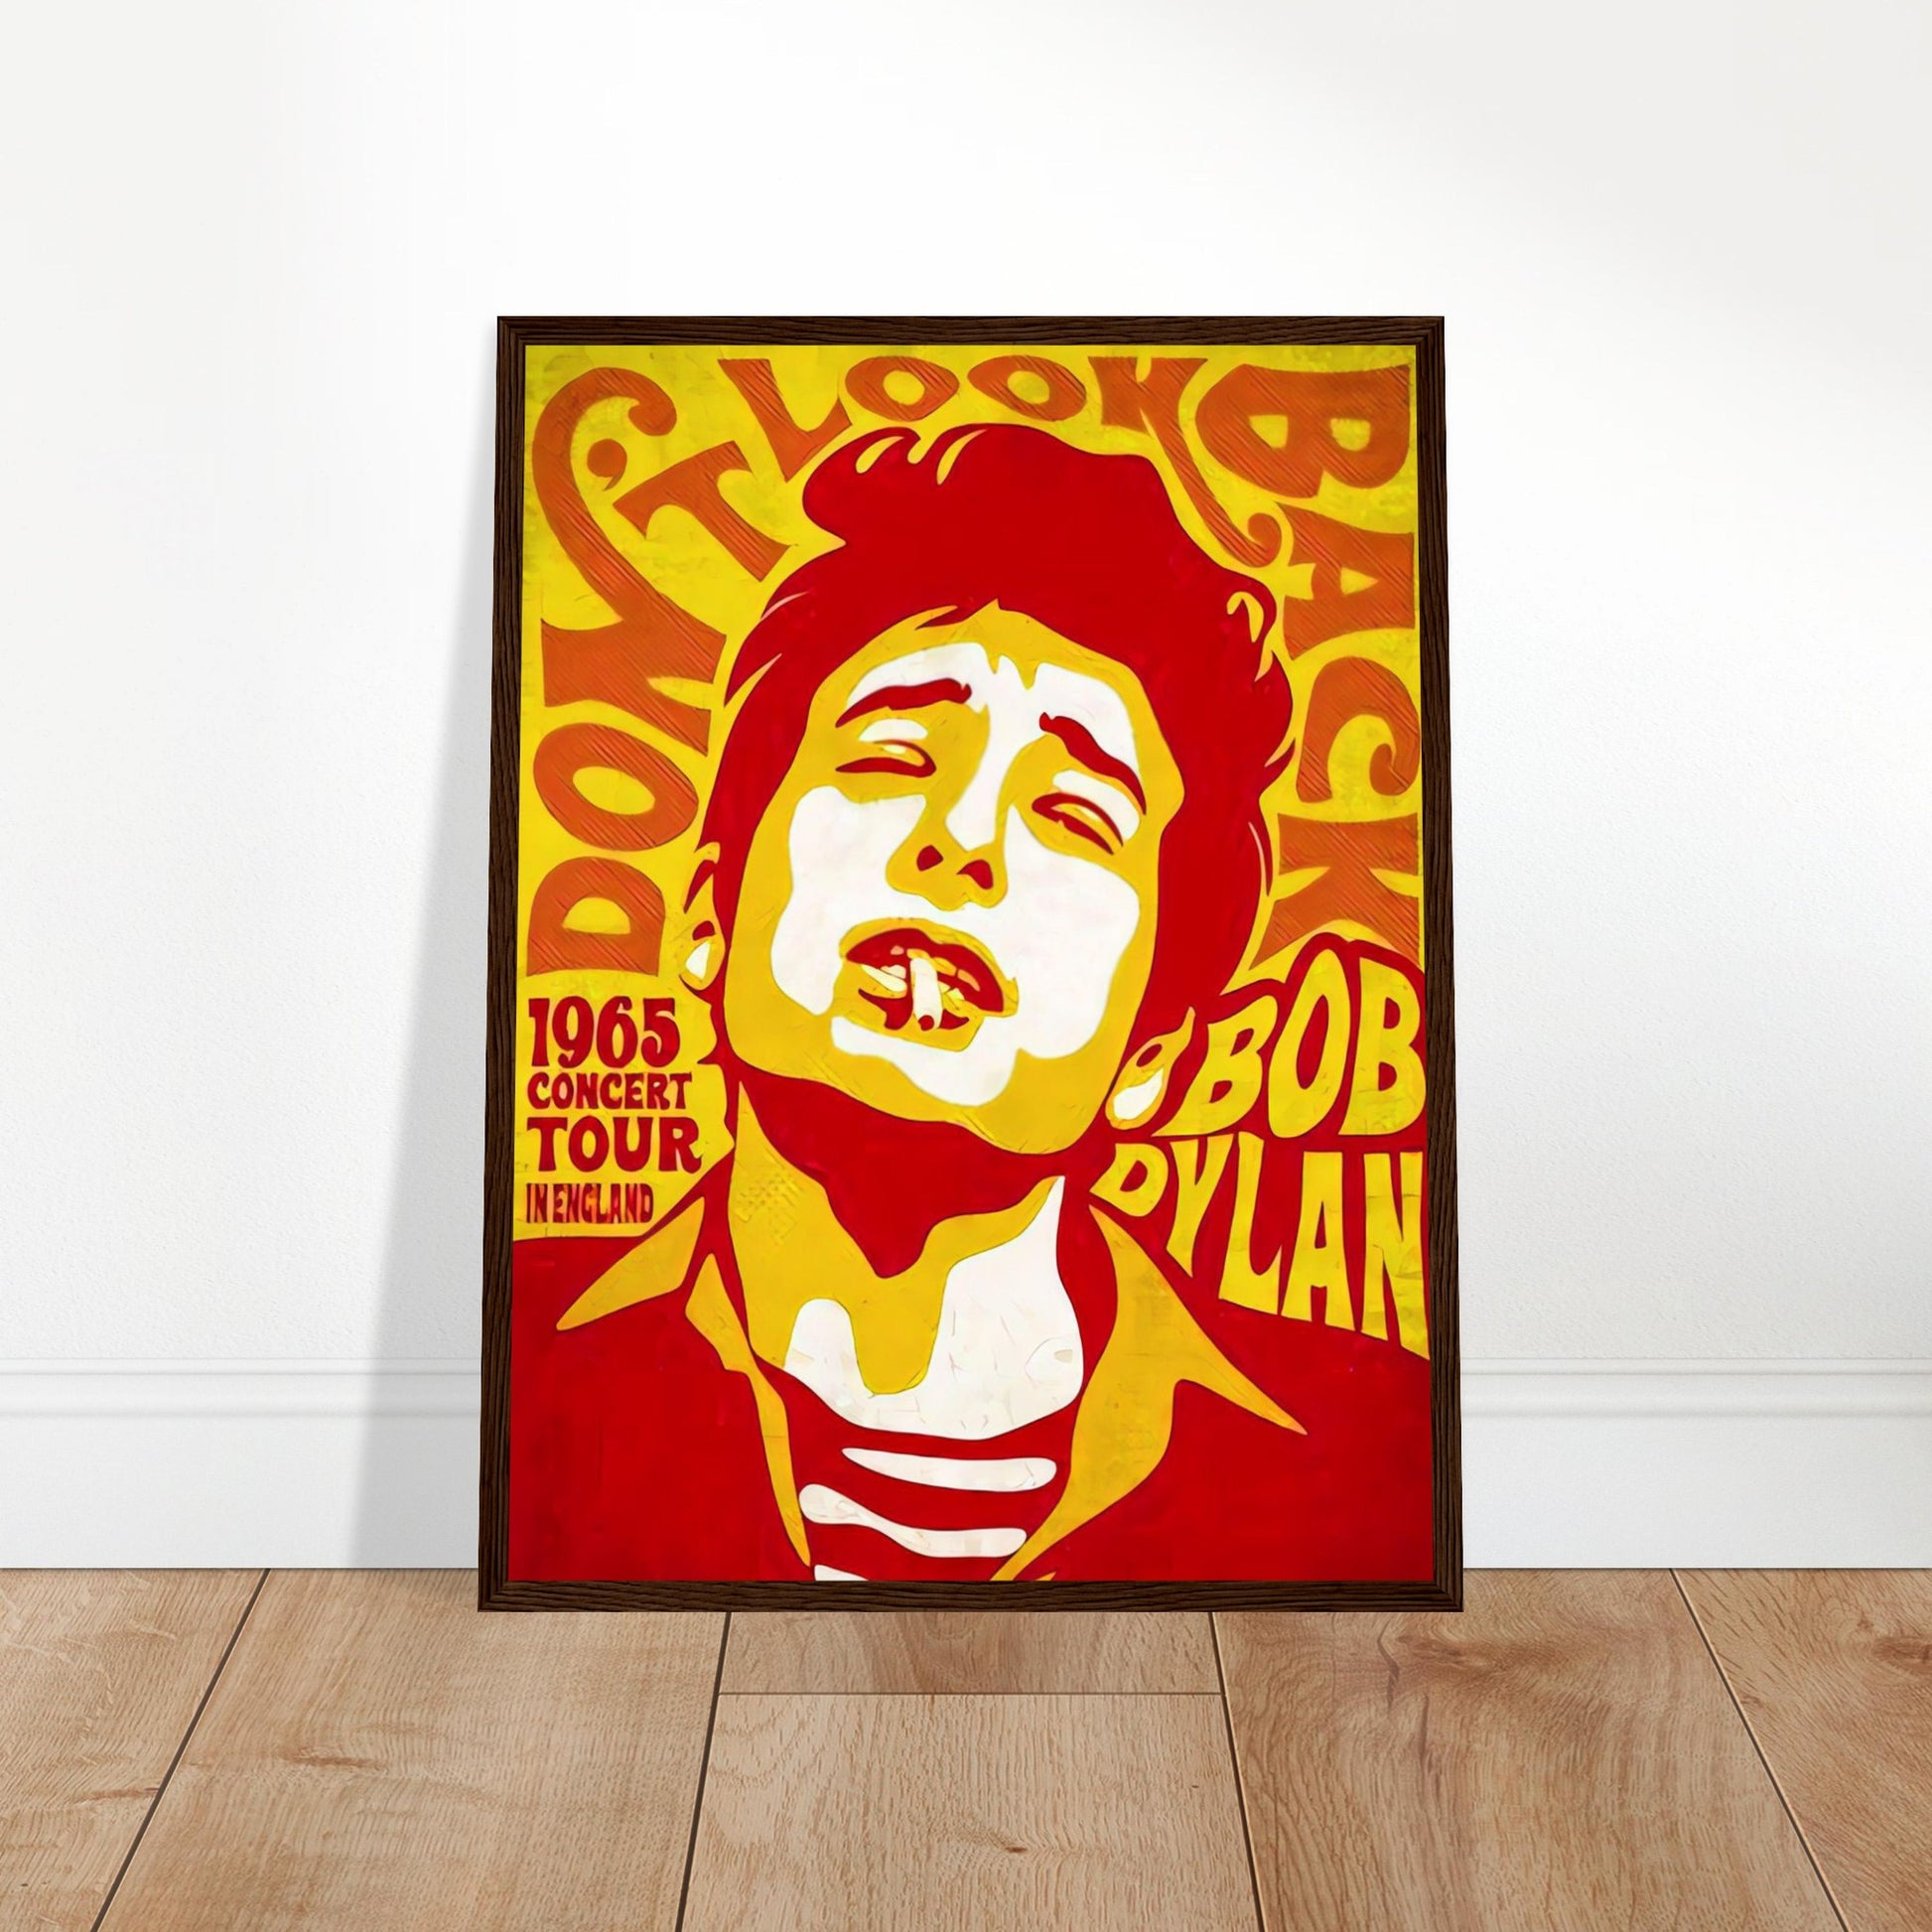 Bob Dylan Vintage Poster Reprint on Premium Matte Paper - Posterify